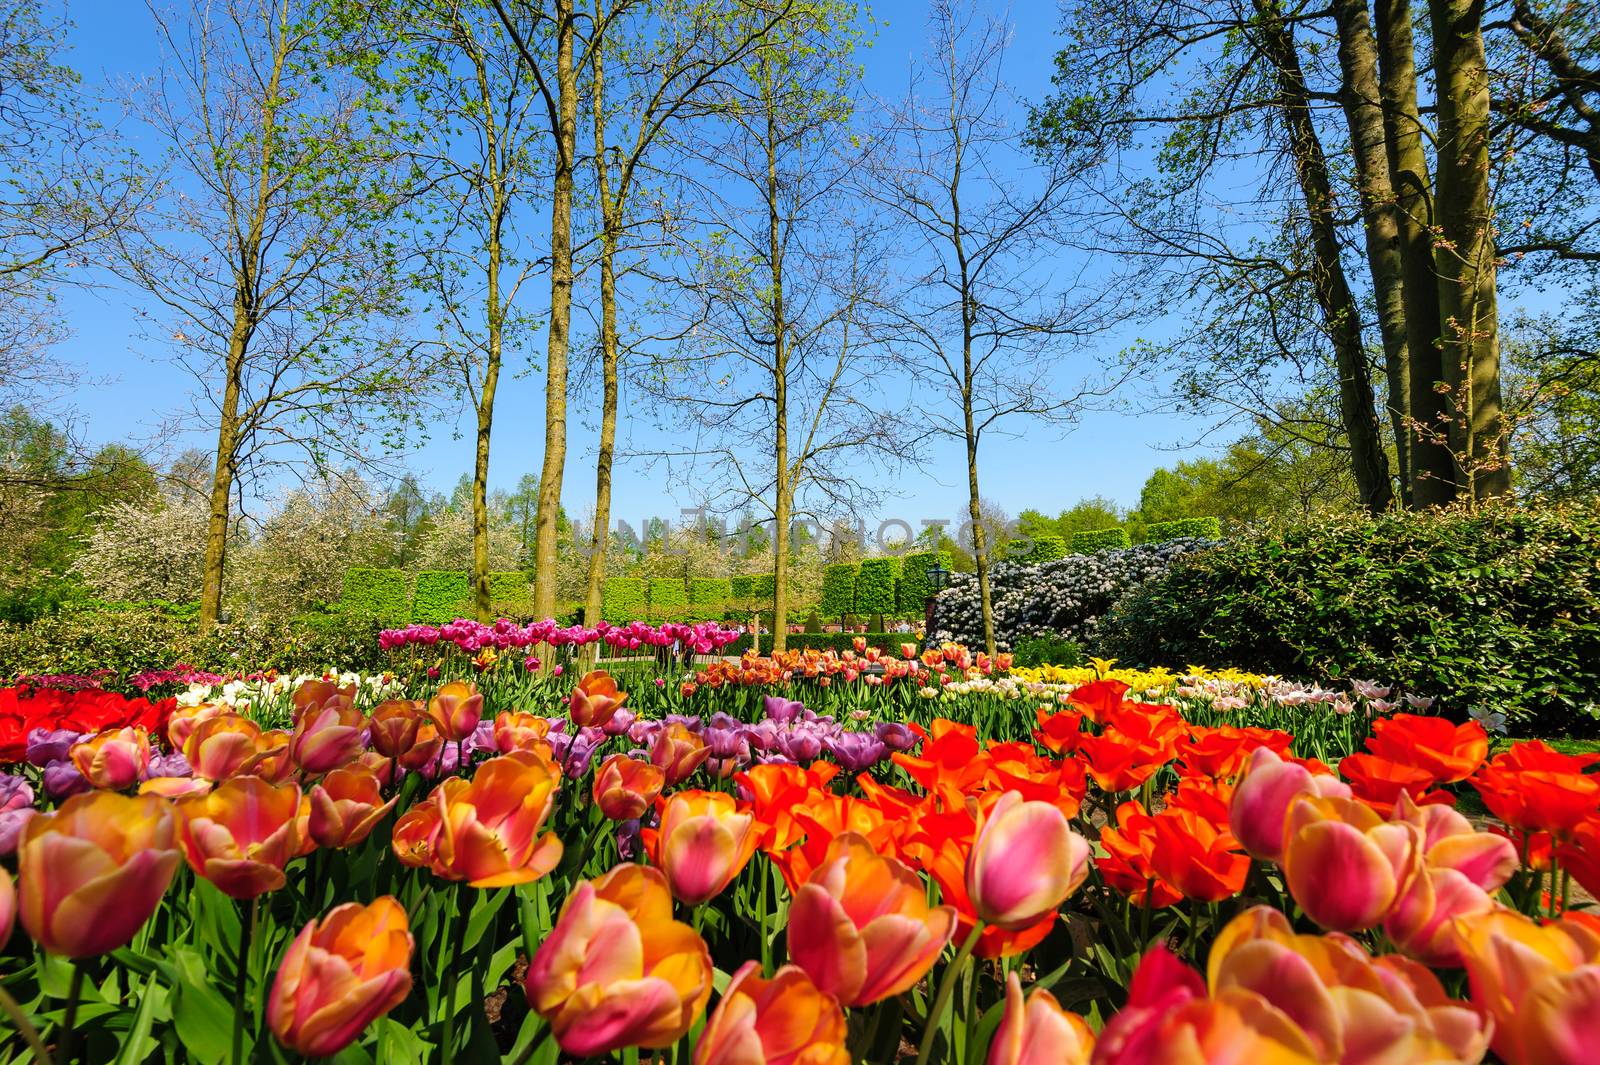 Flower beds of Keukenhof Gardens in Lisse, Netherlands by starush